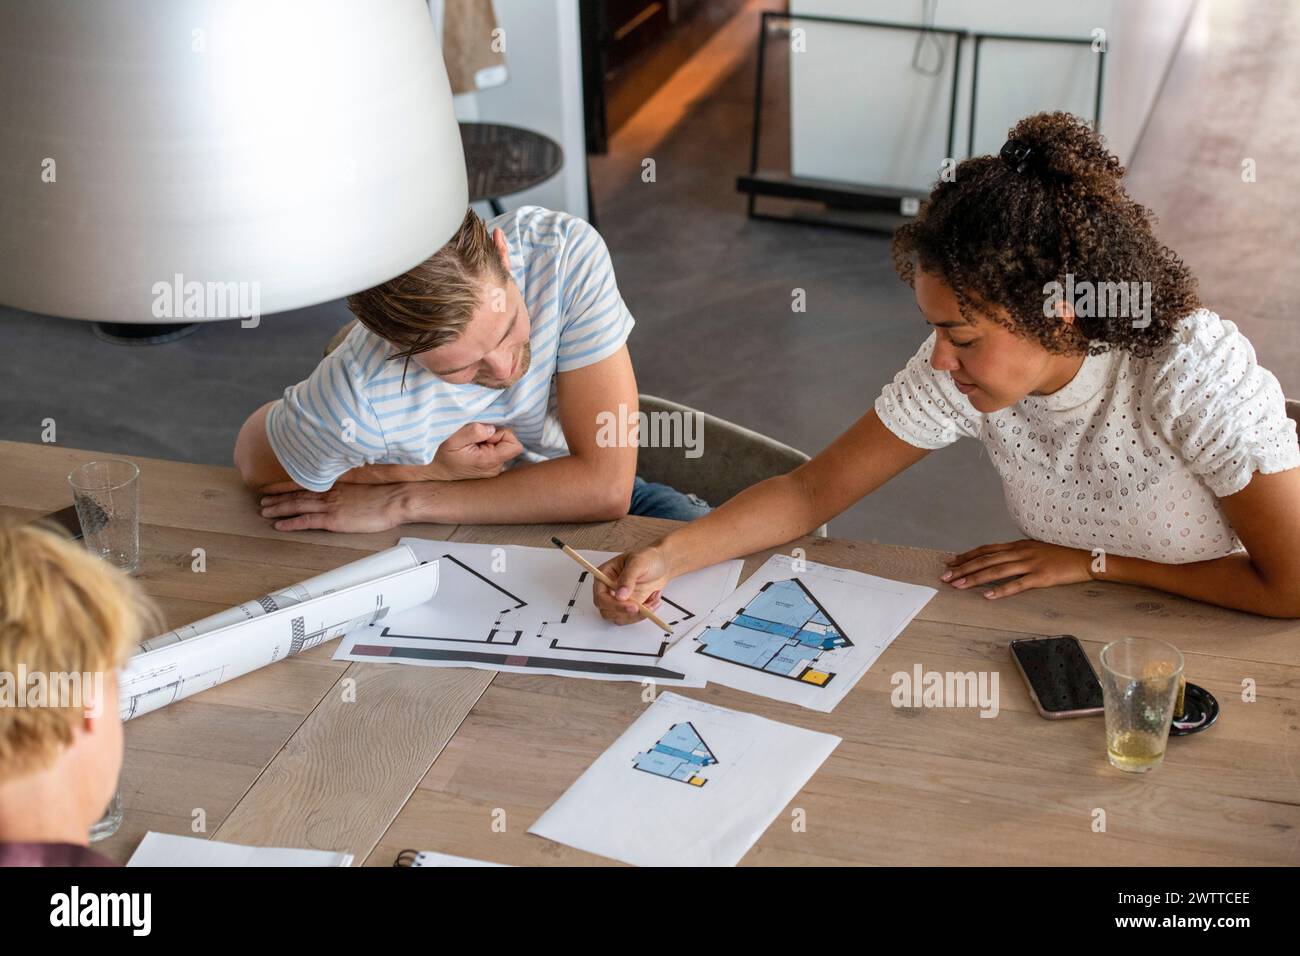 Deux personnes travaillant en collaboration sur des plans architecturaux dans un espace de travail moderne. Banque D'Images